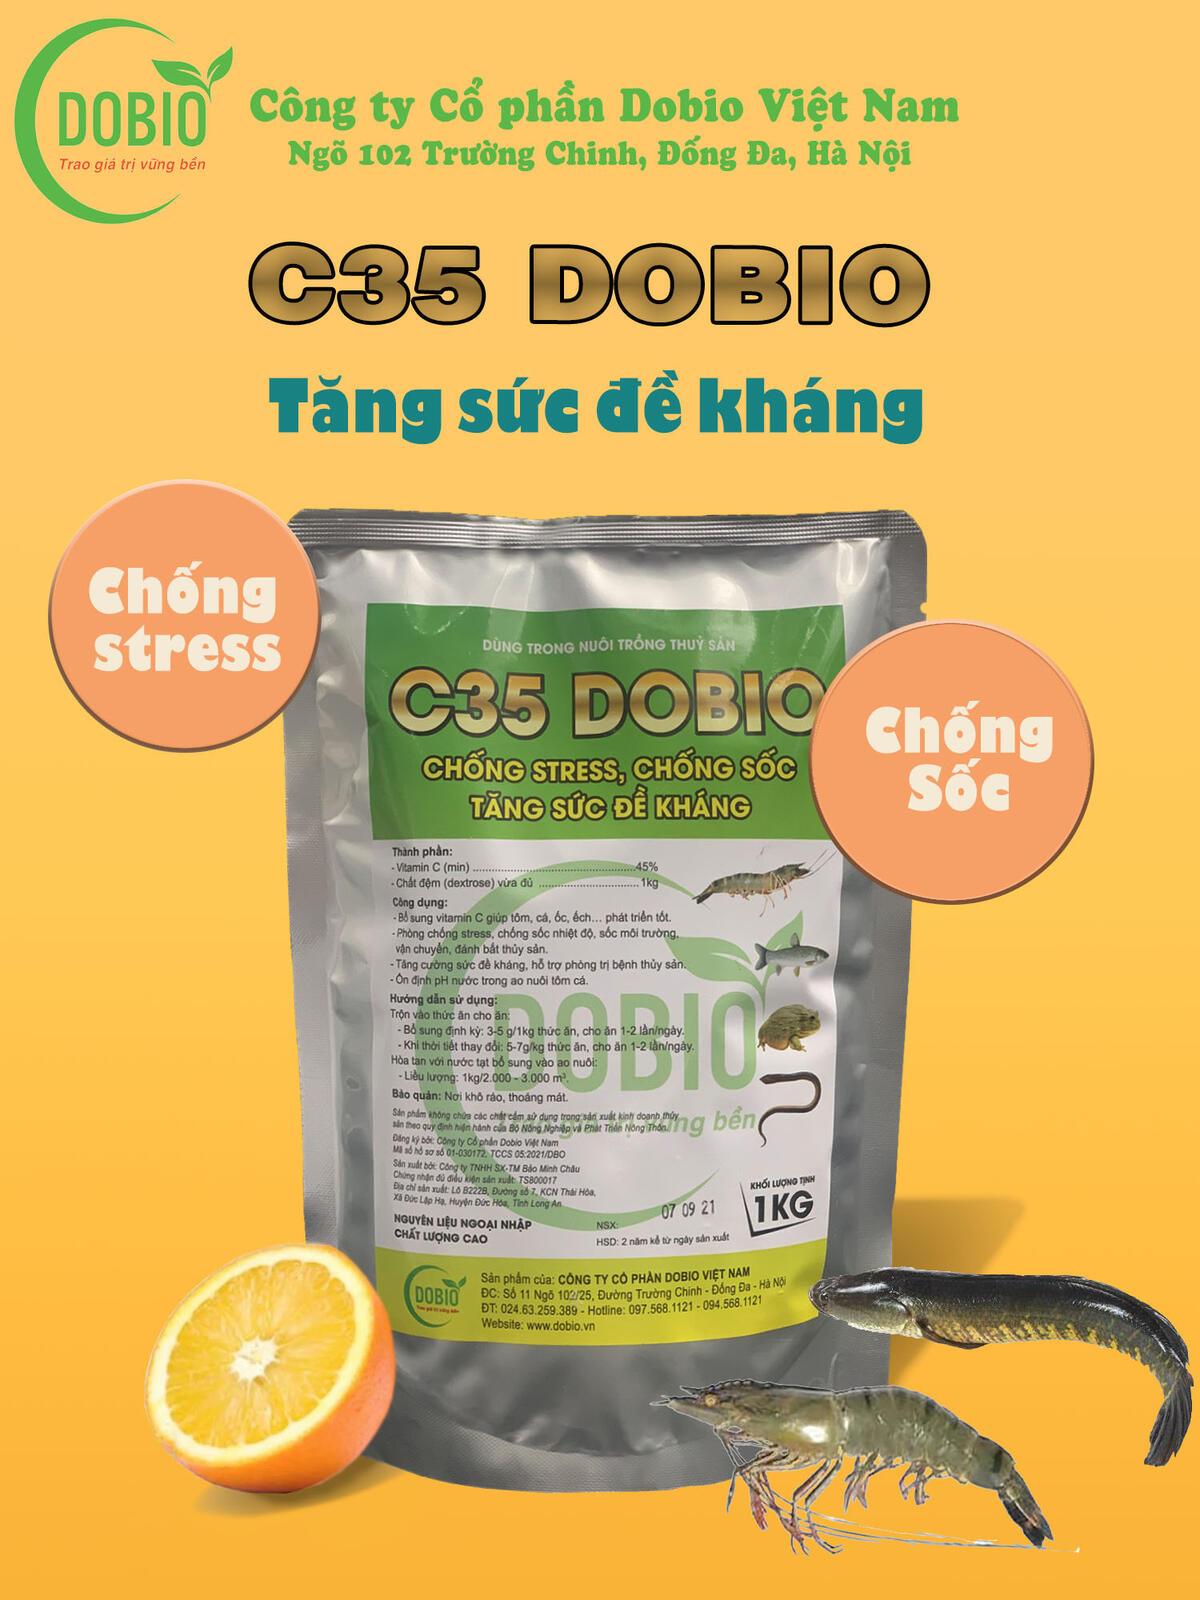 C35 DOBIO - Vitamnin C, tăng sức đề kháng, giảm stress cho Cá Tôm